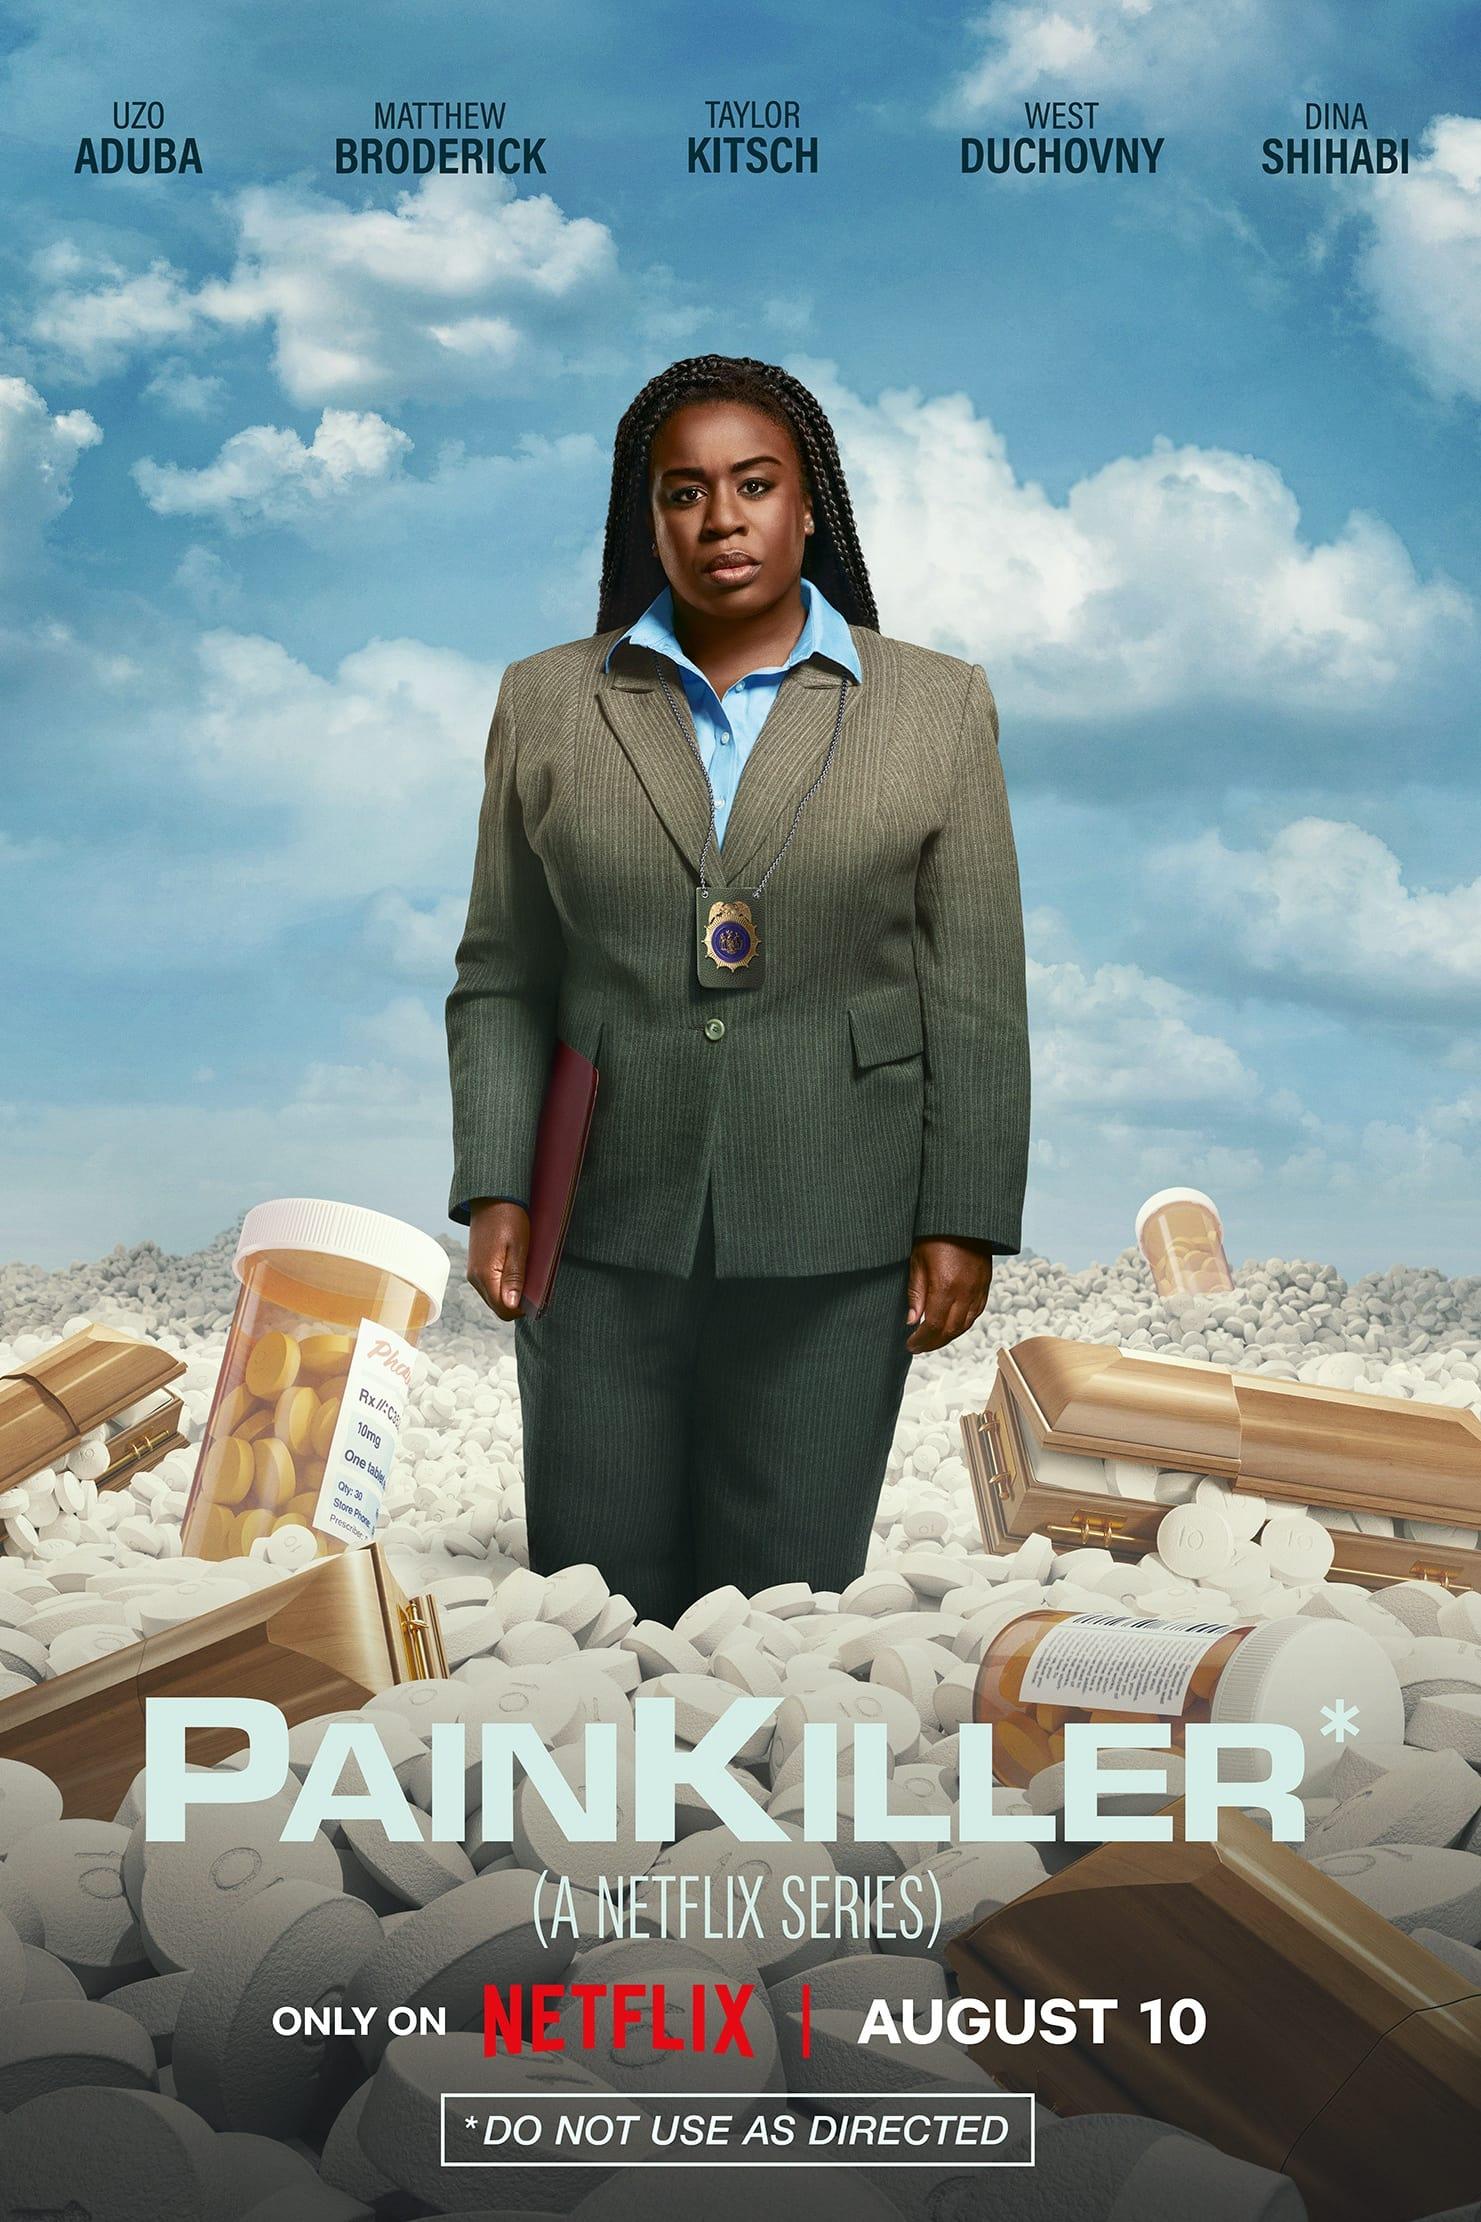 Painkiller poster